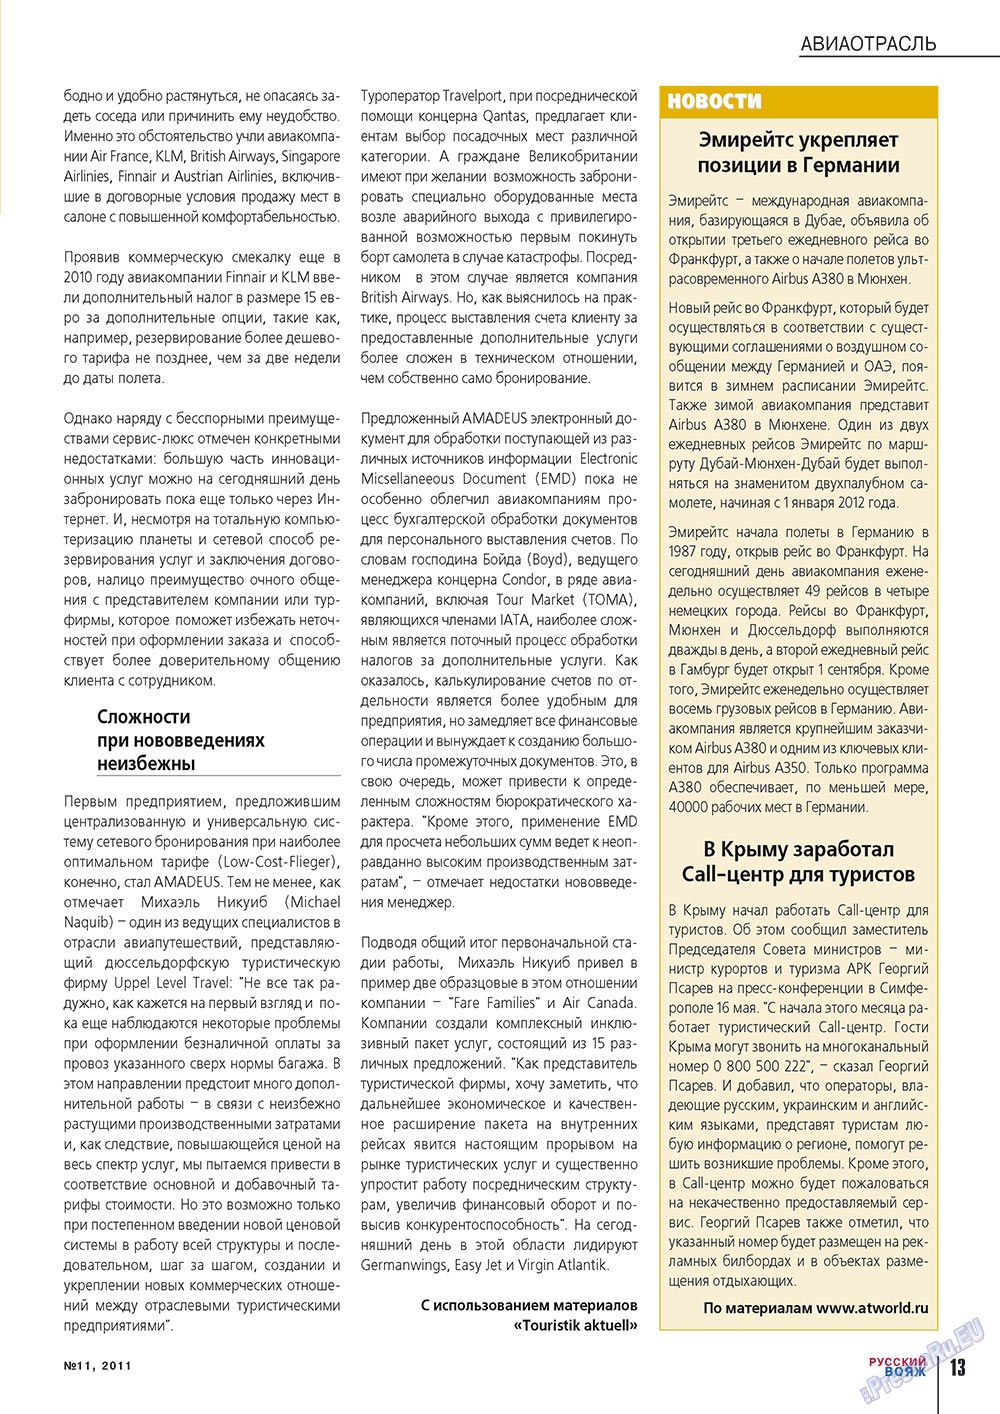 Русский вояж (журнал). 2011 год, номер 11, стр. 13